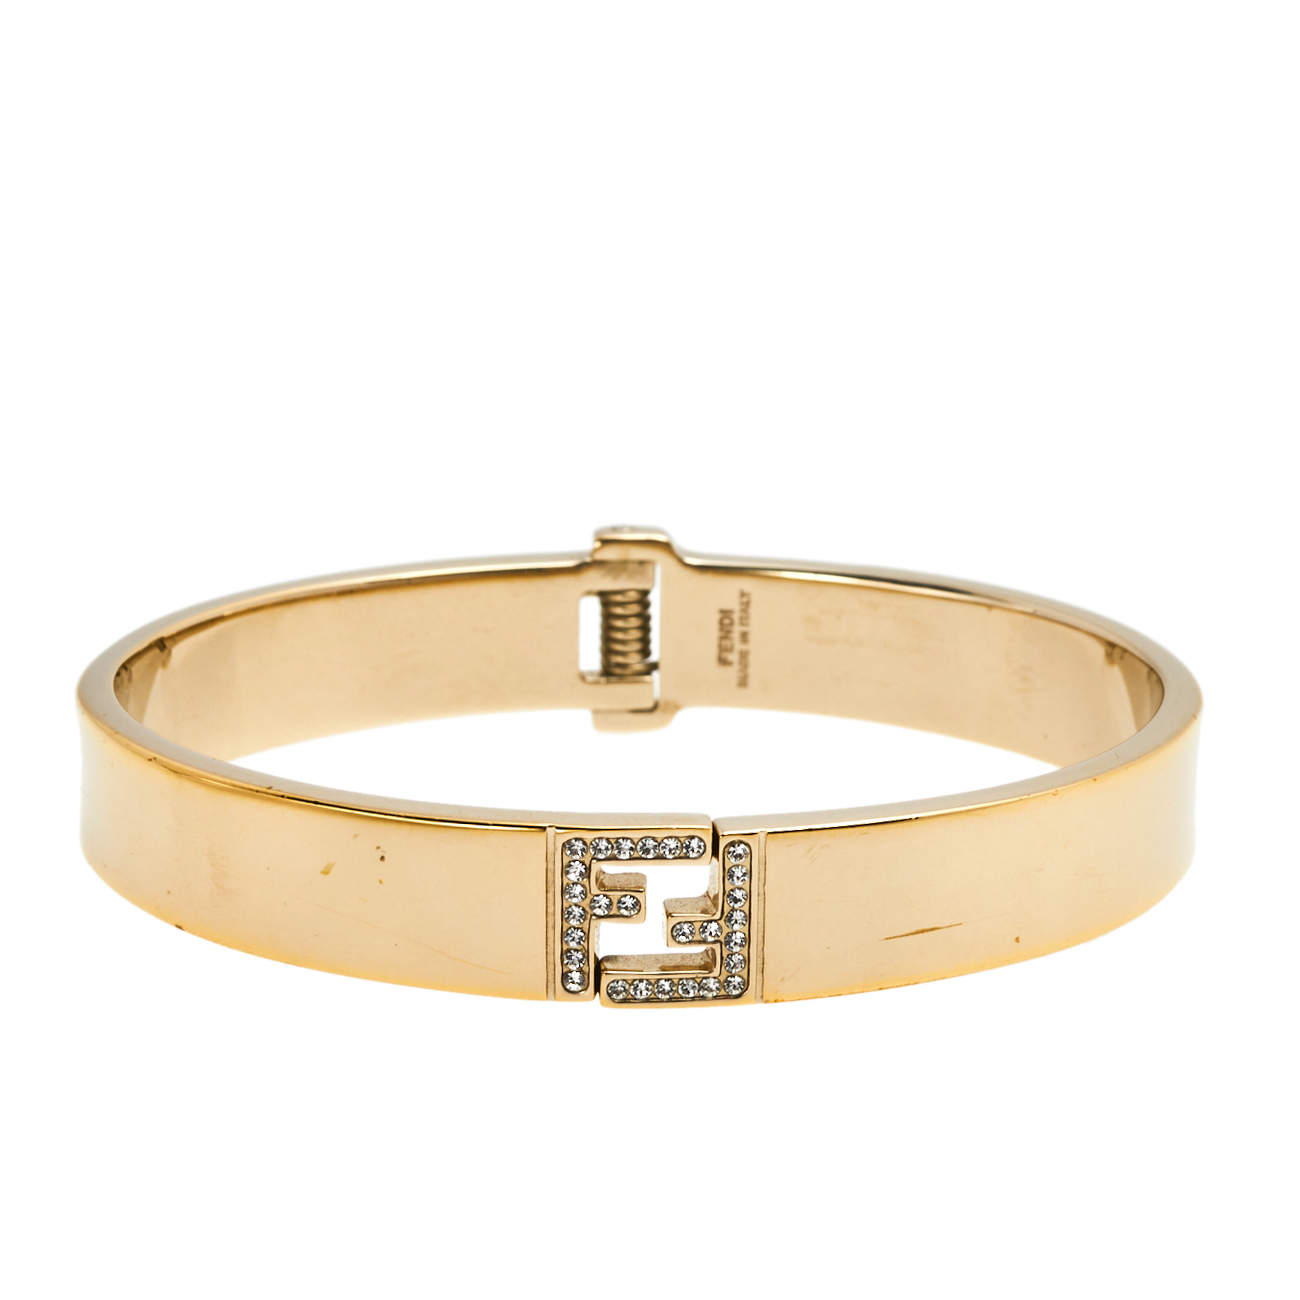 Fendi Fendista Crystal Logo Gold Tone Cuff Bracelet